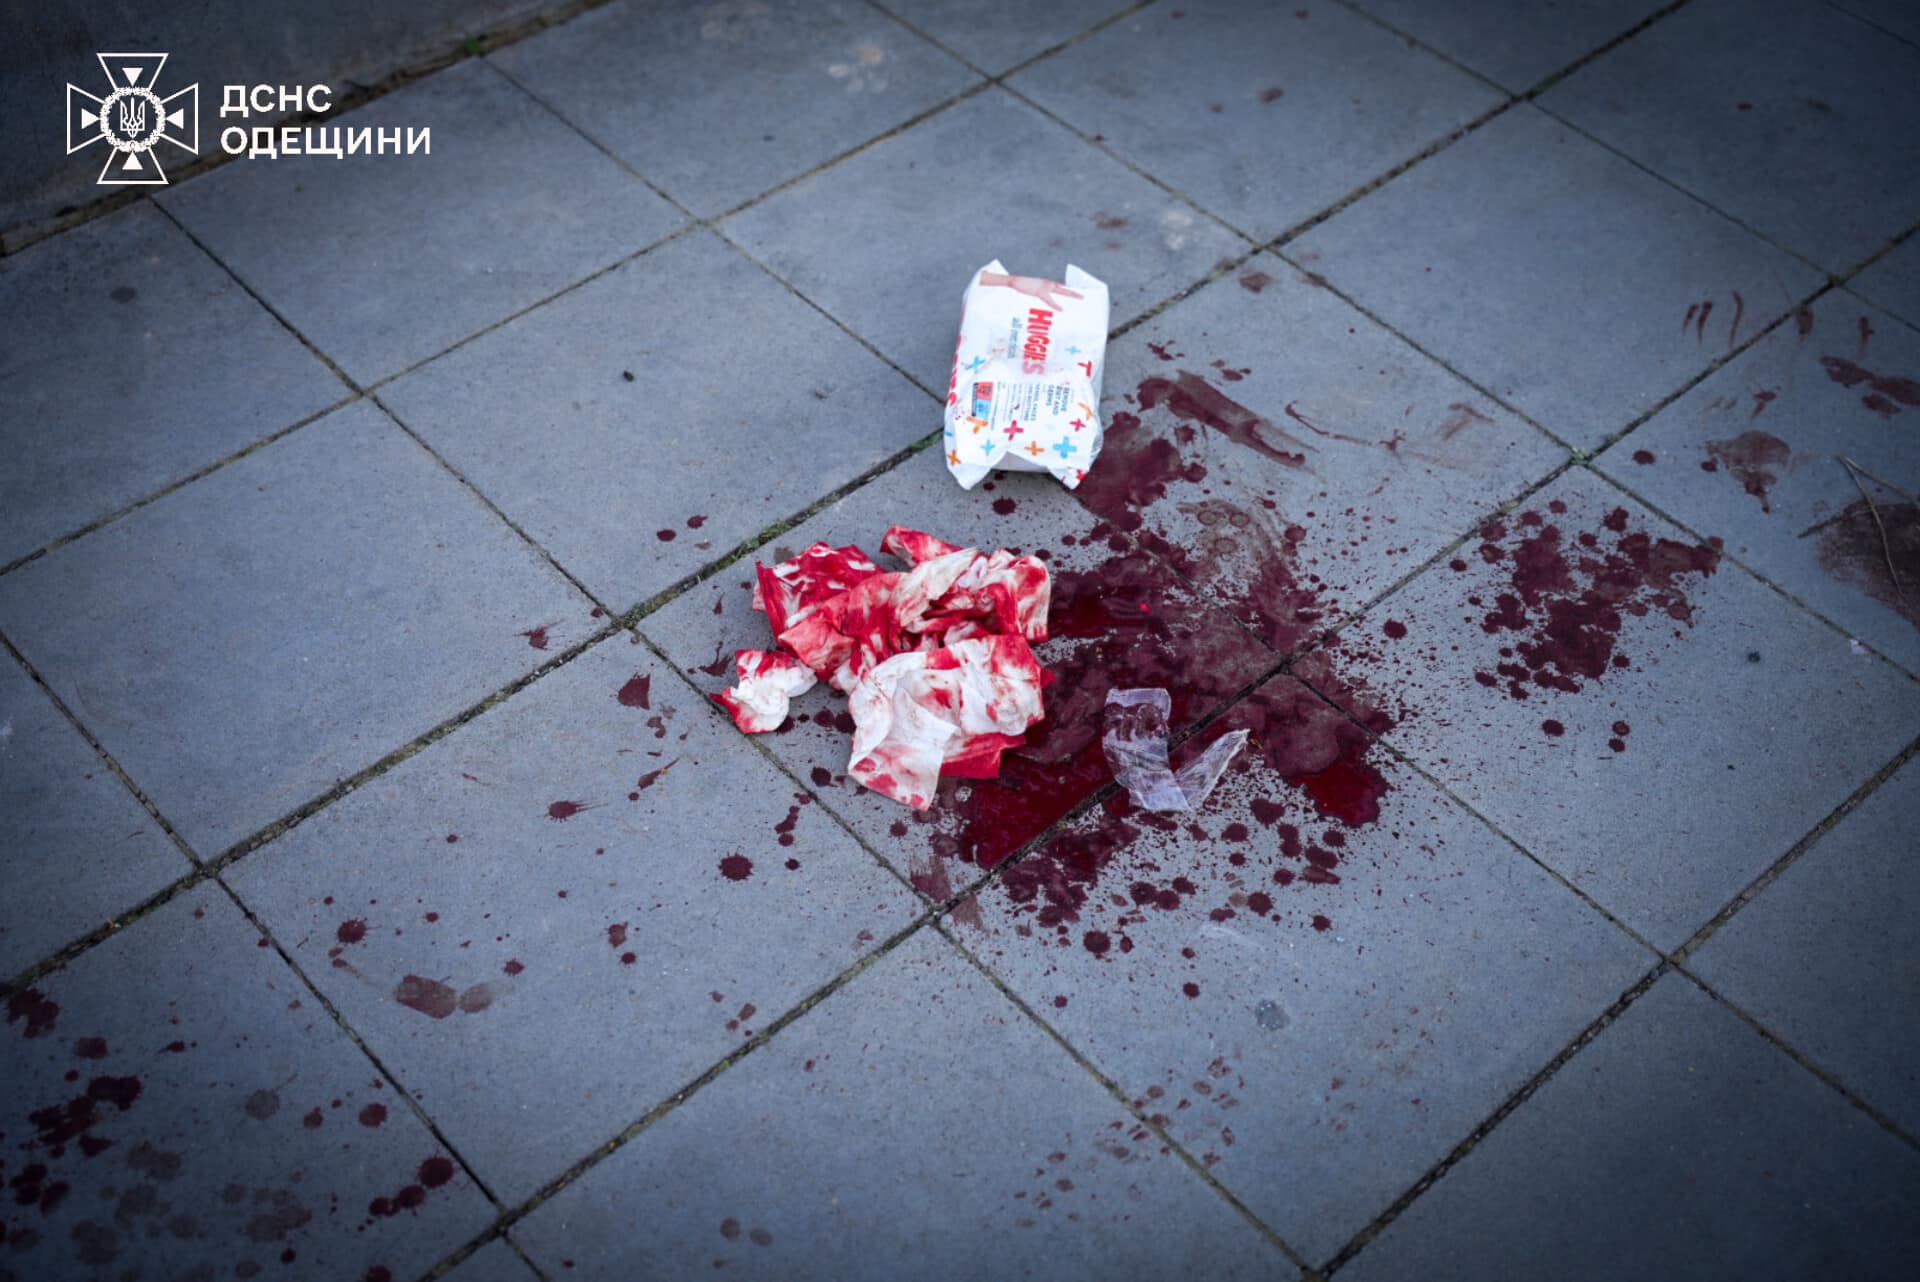 Окупанти били ракетою з касетним боєприпасом, загинув проректор, поранений ректор – усі подробиці трагедії в Одесі (фото)